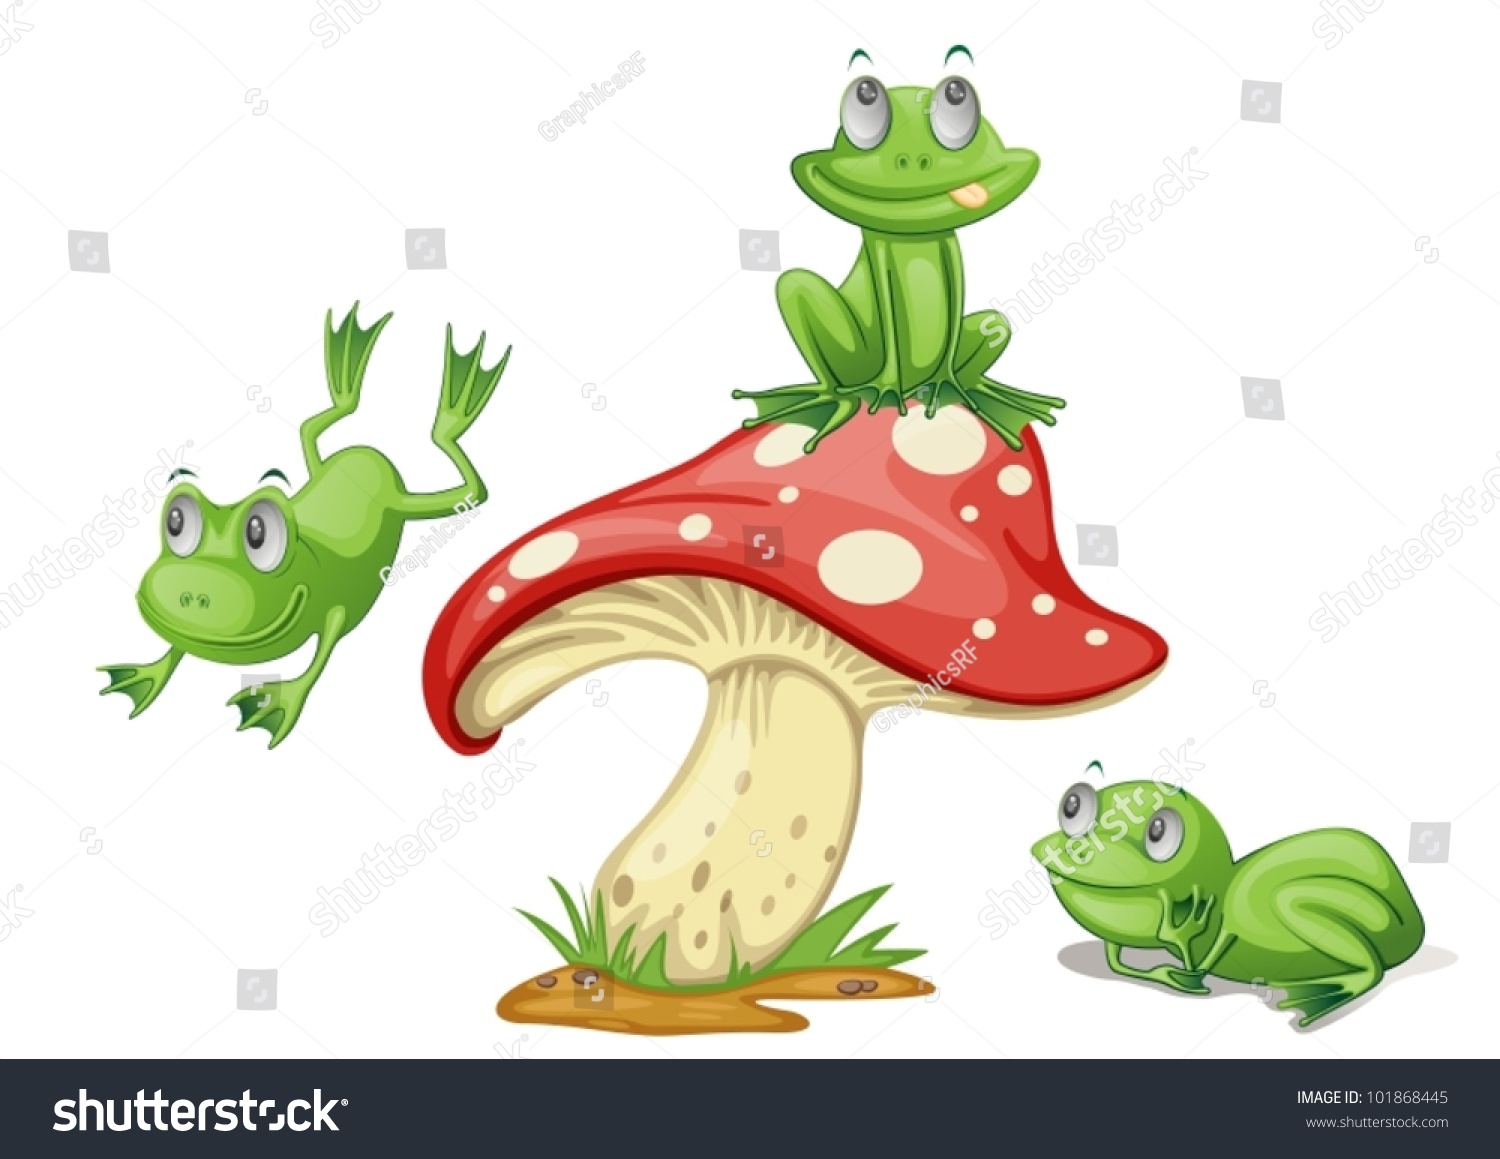 Mushroom Frog SVG